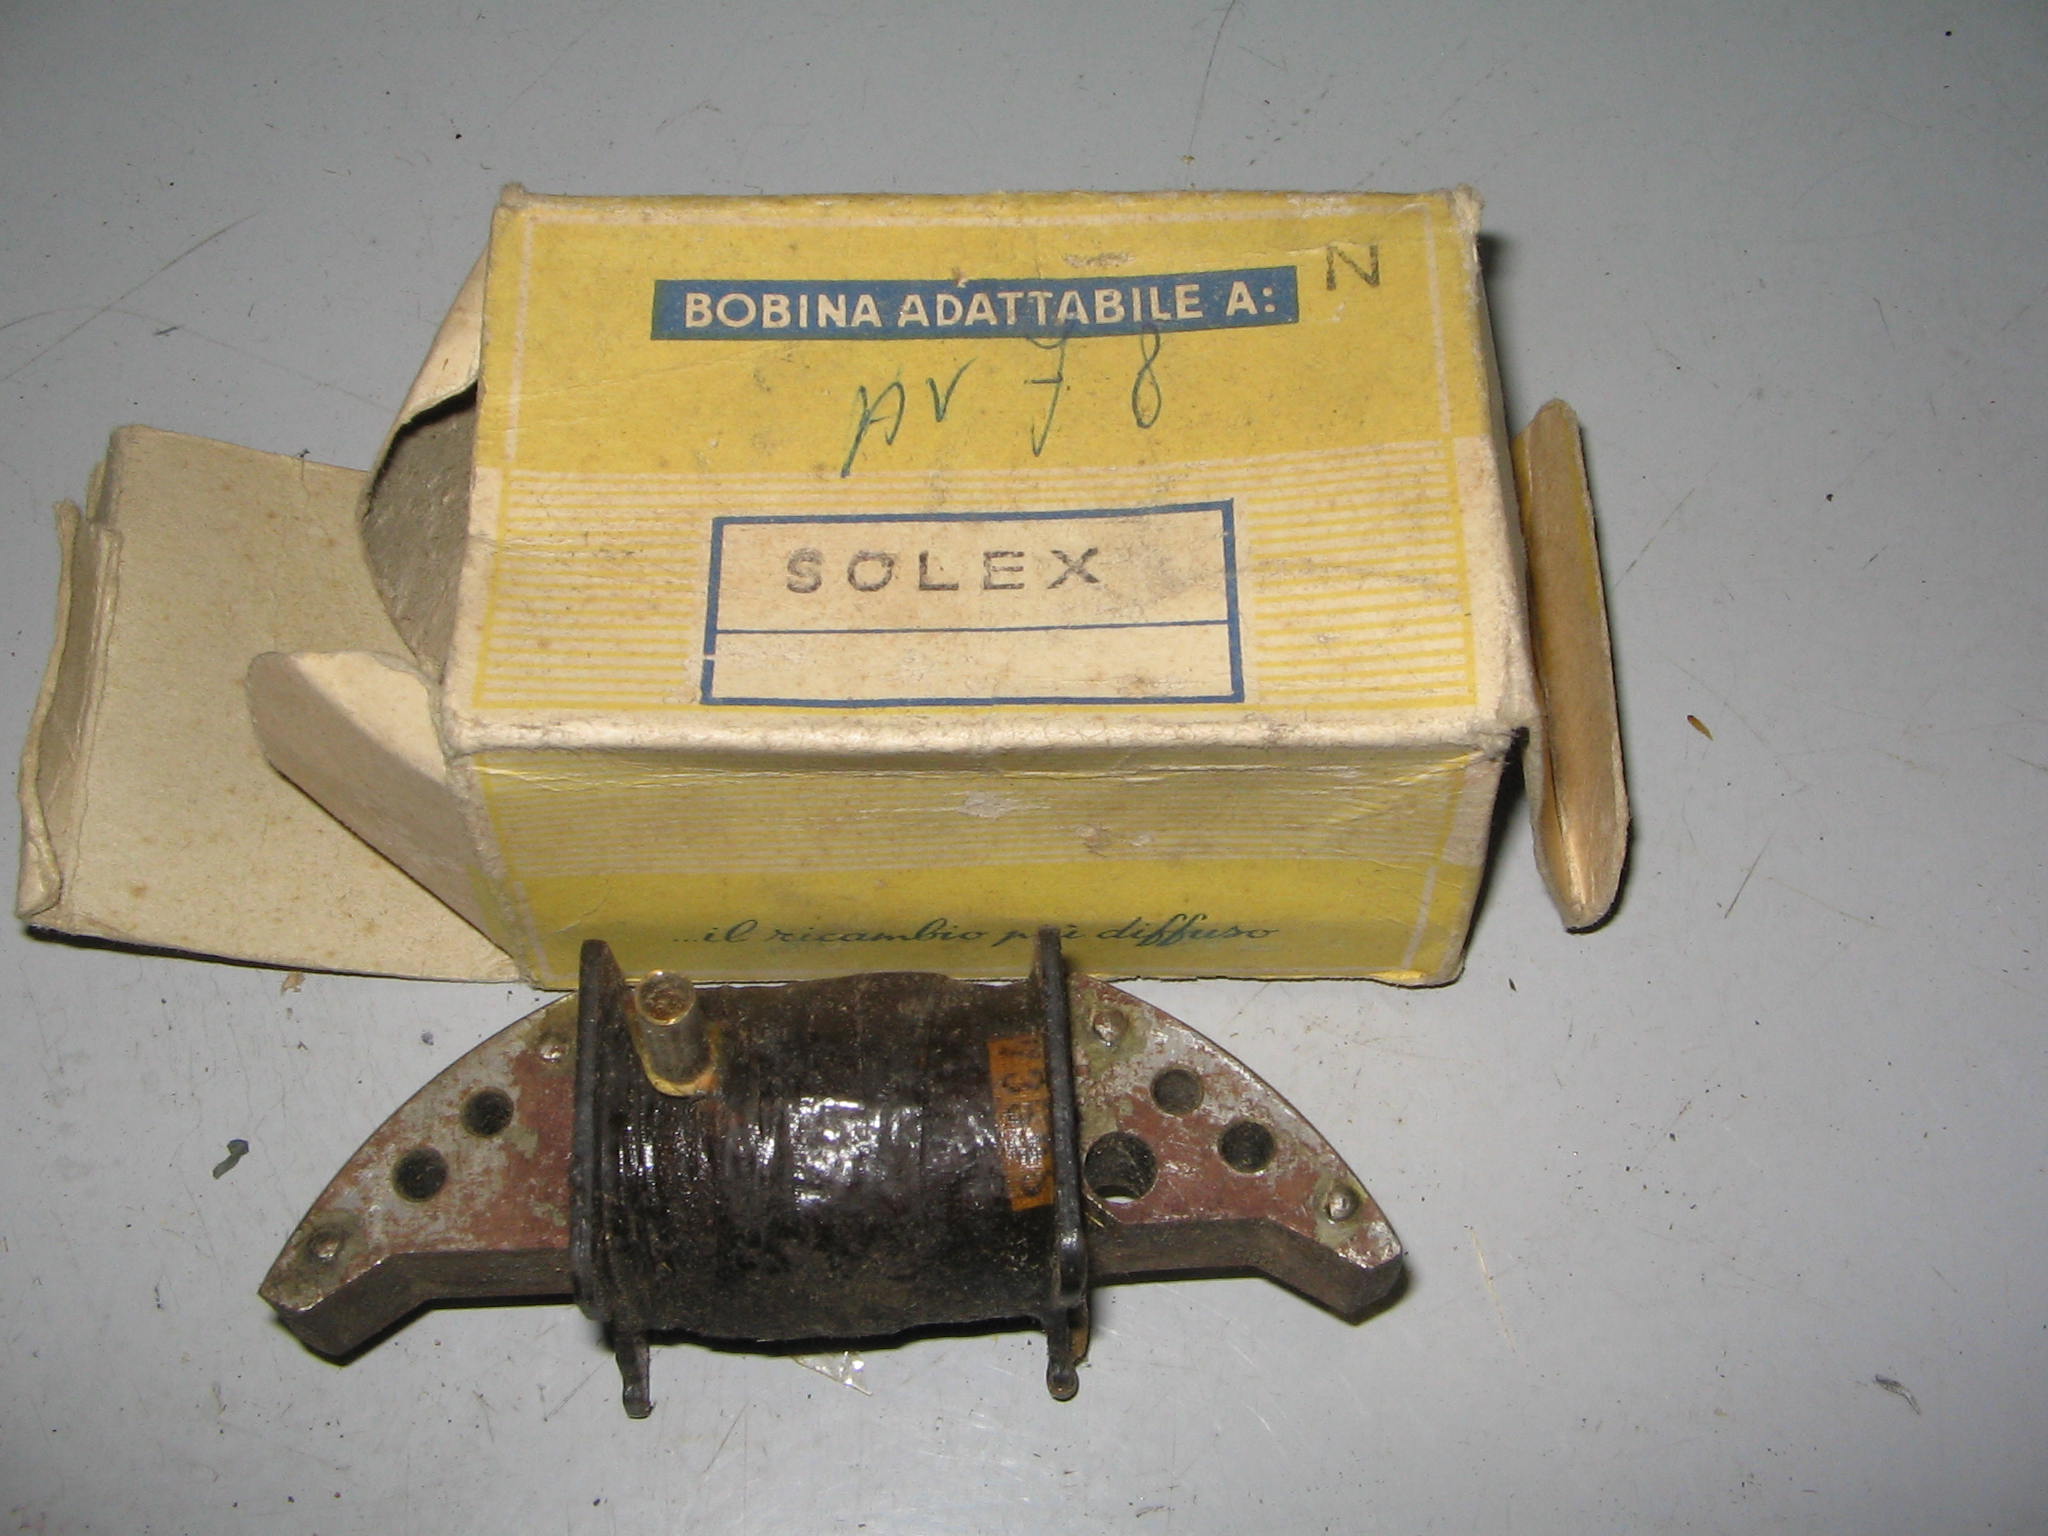 BOBINA SOLEX -N.7054